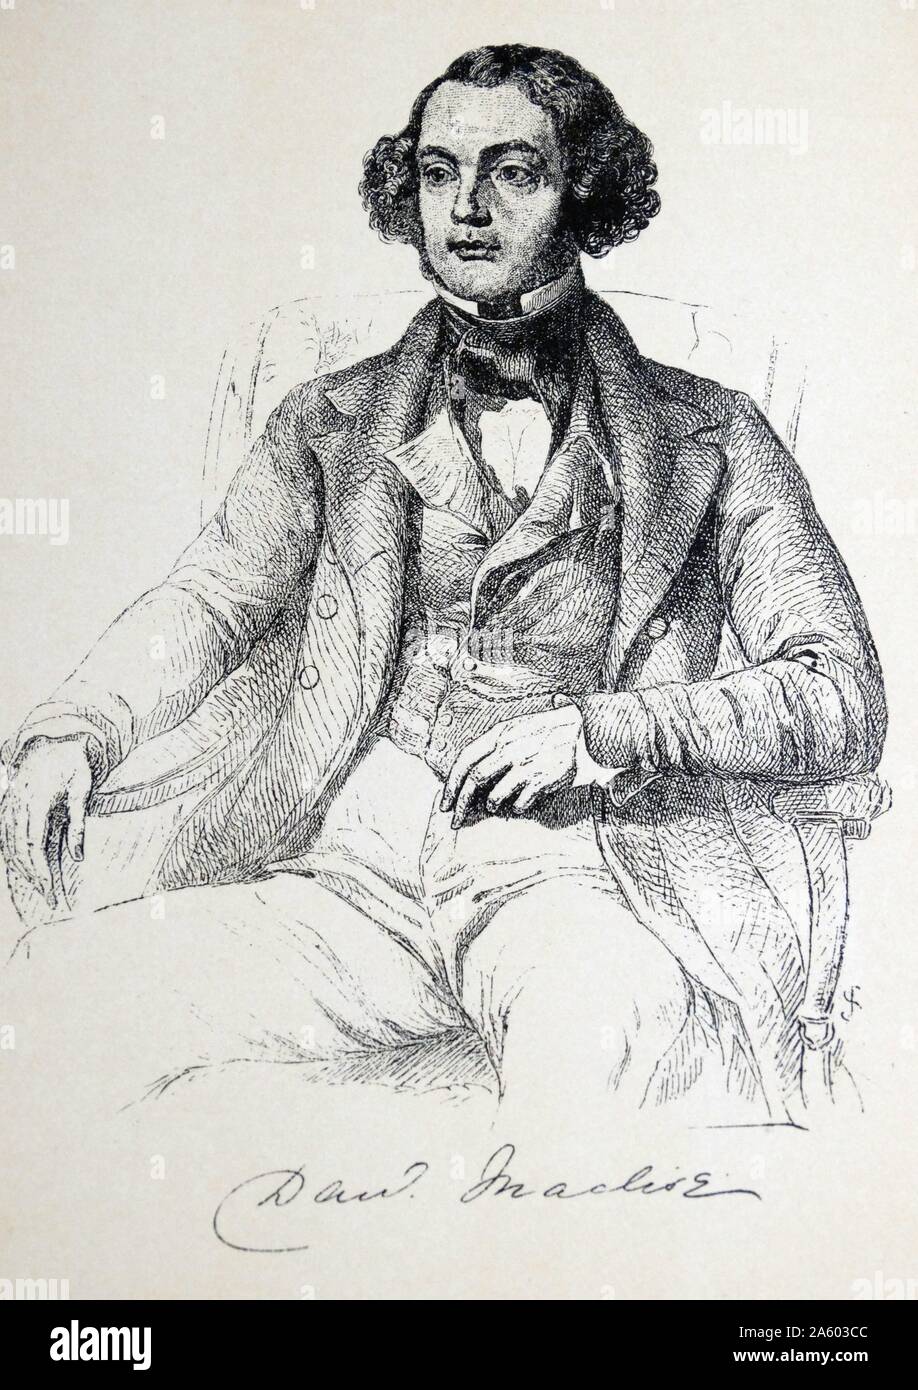 Porträt von Daniel Maclise (1806-1870), eine irische Geschichte, Literatur- und Porträtmaler und Illustrator. Vom 19. Jahrhundert Stockfoto